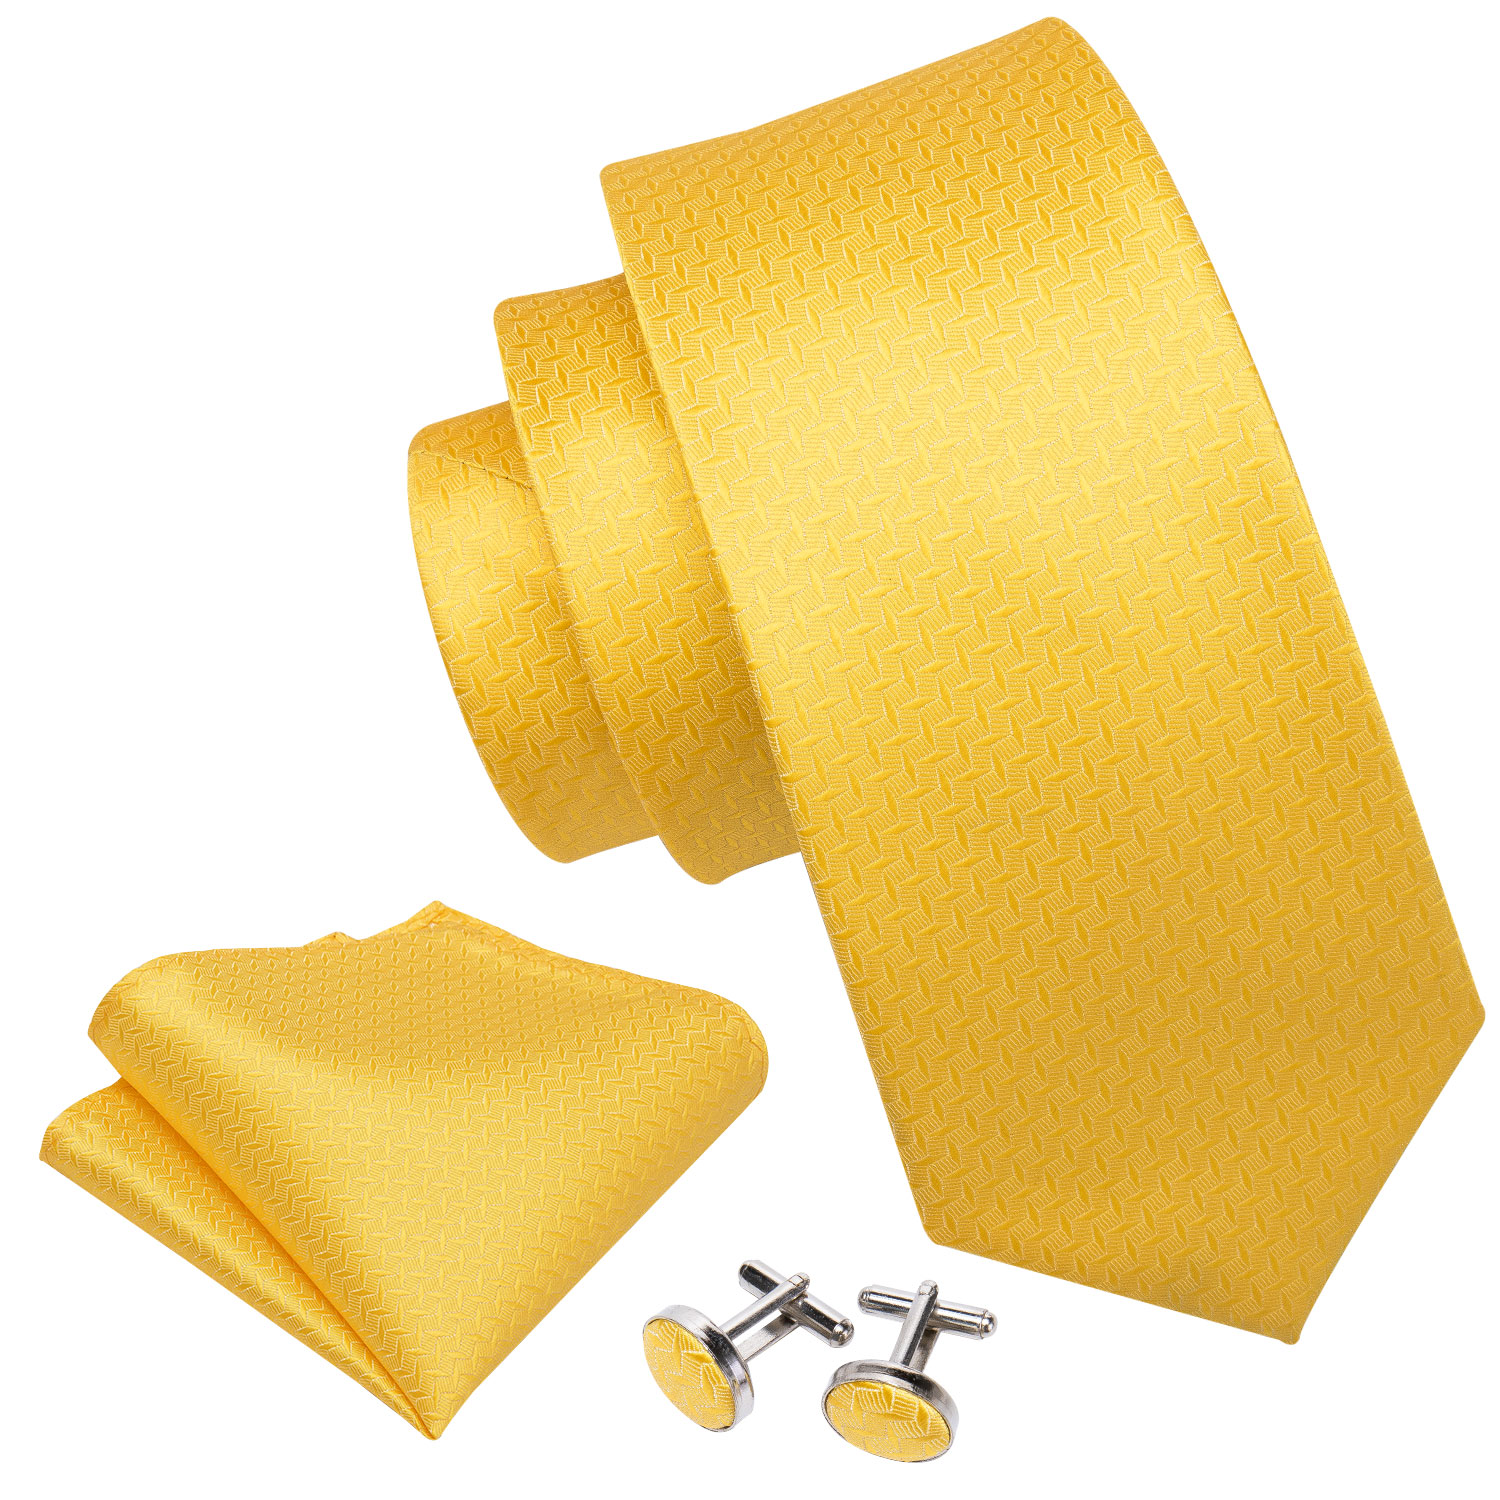 Men Tie Set Yellow Floral Silk Tie For Men Wedding Party Necktie Handkerchief Cravat NeckTie Set Barry.Wang Fashion Tie LS-5197